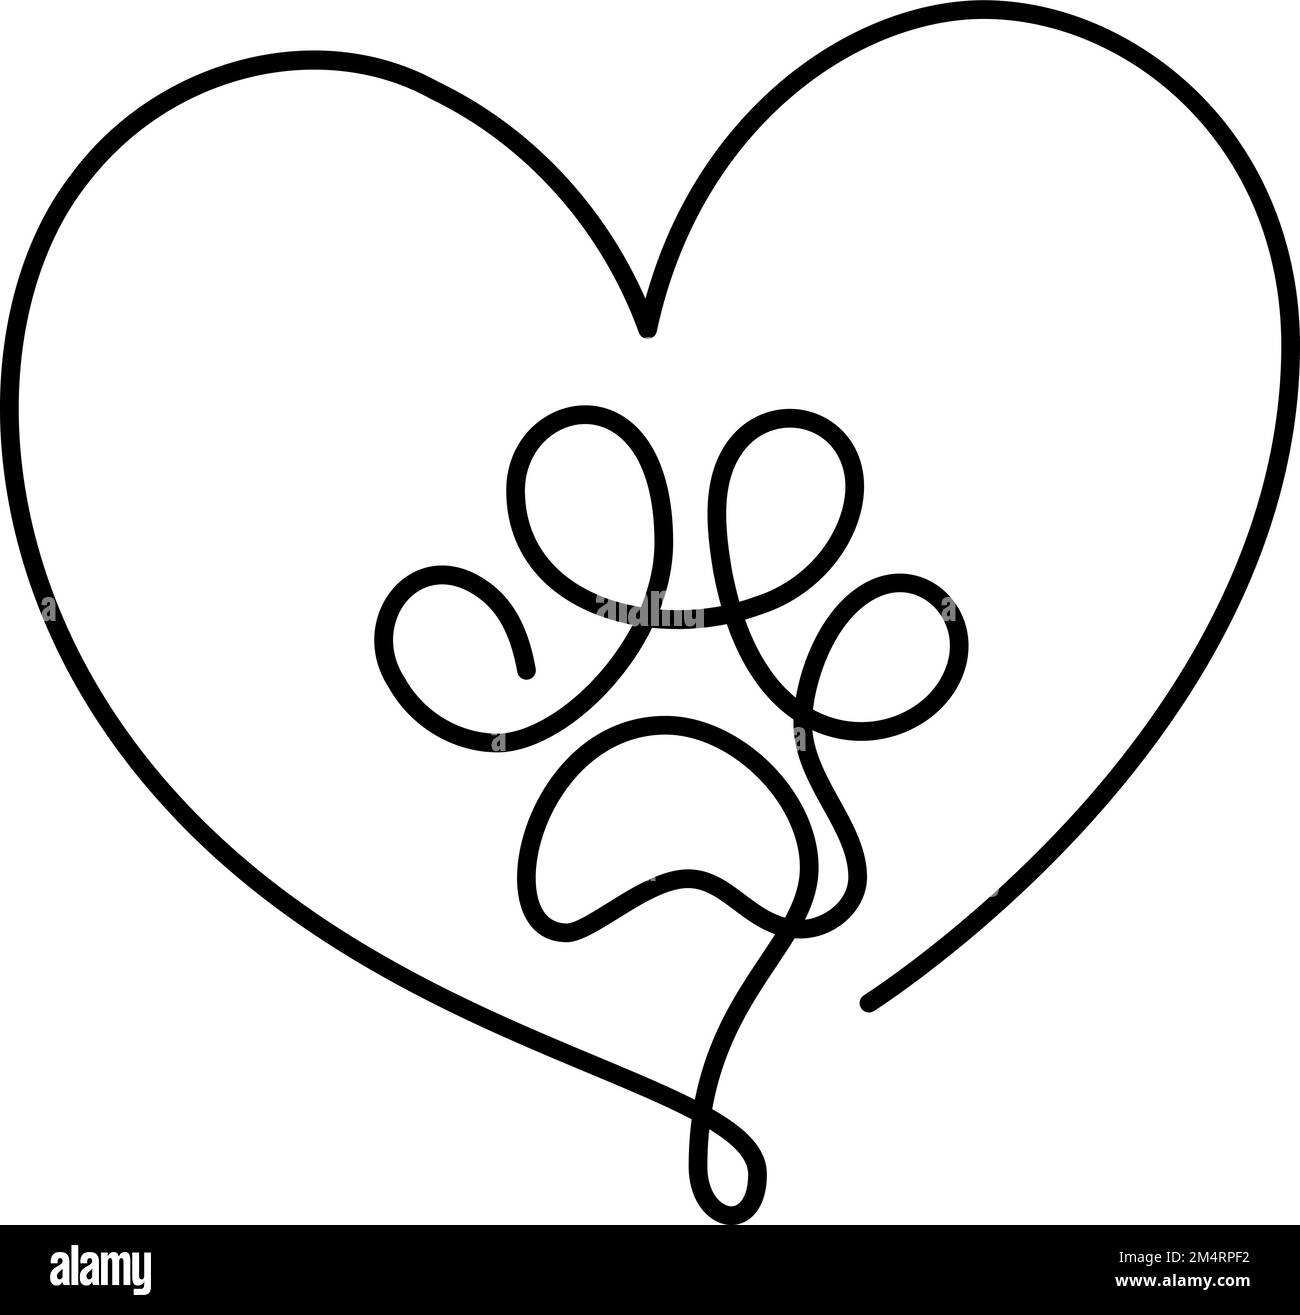 Fußabdruck von Hund- oder Katzenpfote und Herz in durchgehender einzeiliger Zeichnung des Logos. Minimale Strichgrafiken. Tier im Herzen. Haustiere lieben das Konzept Monoline Stock Vektor